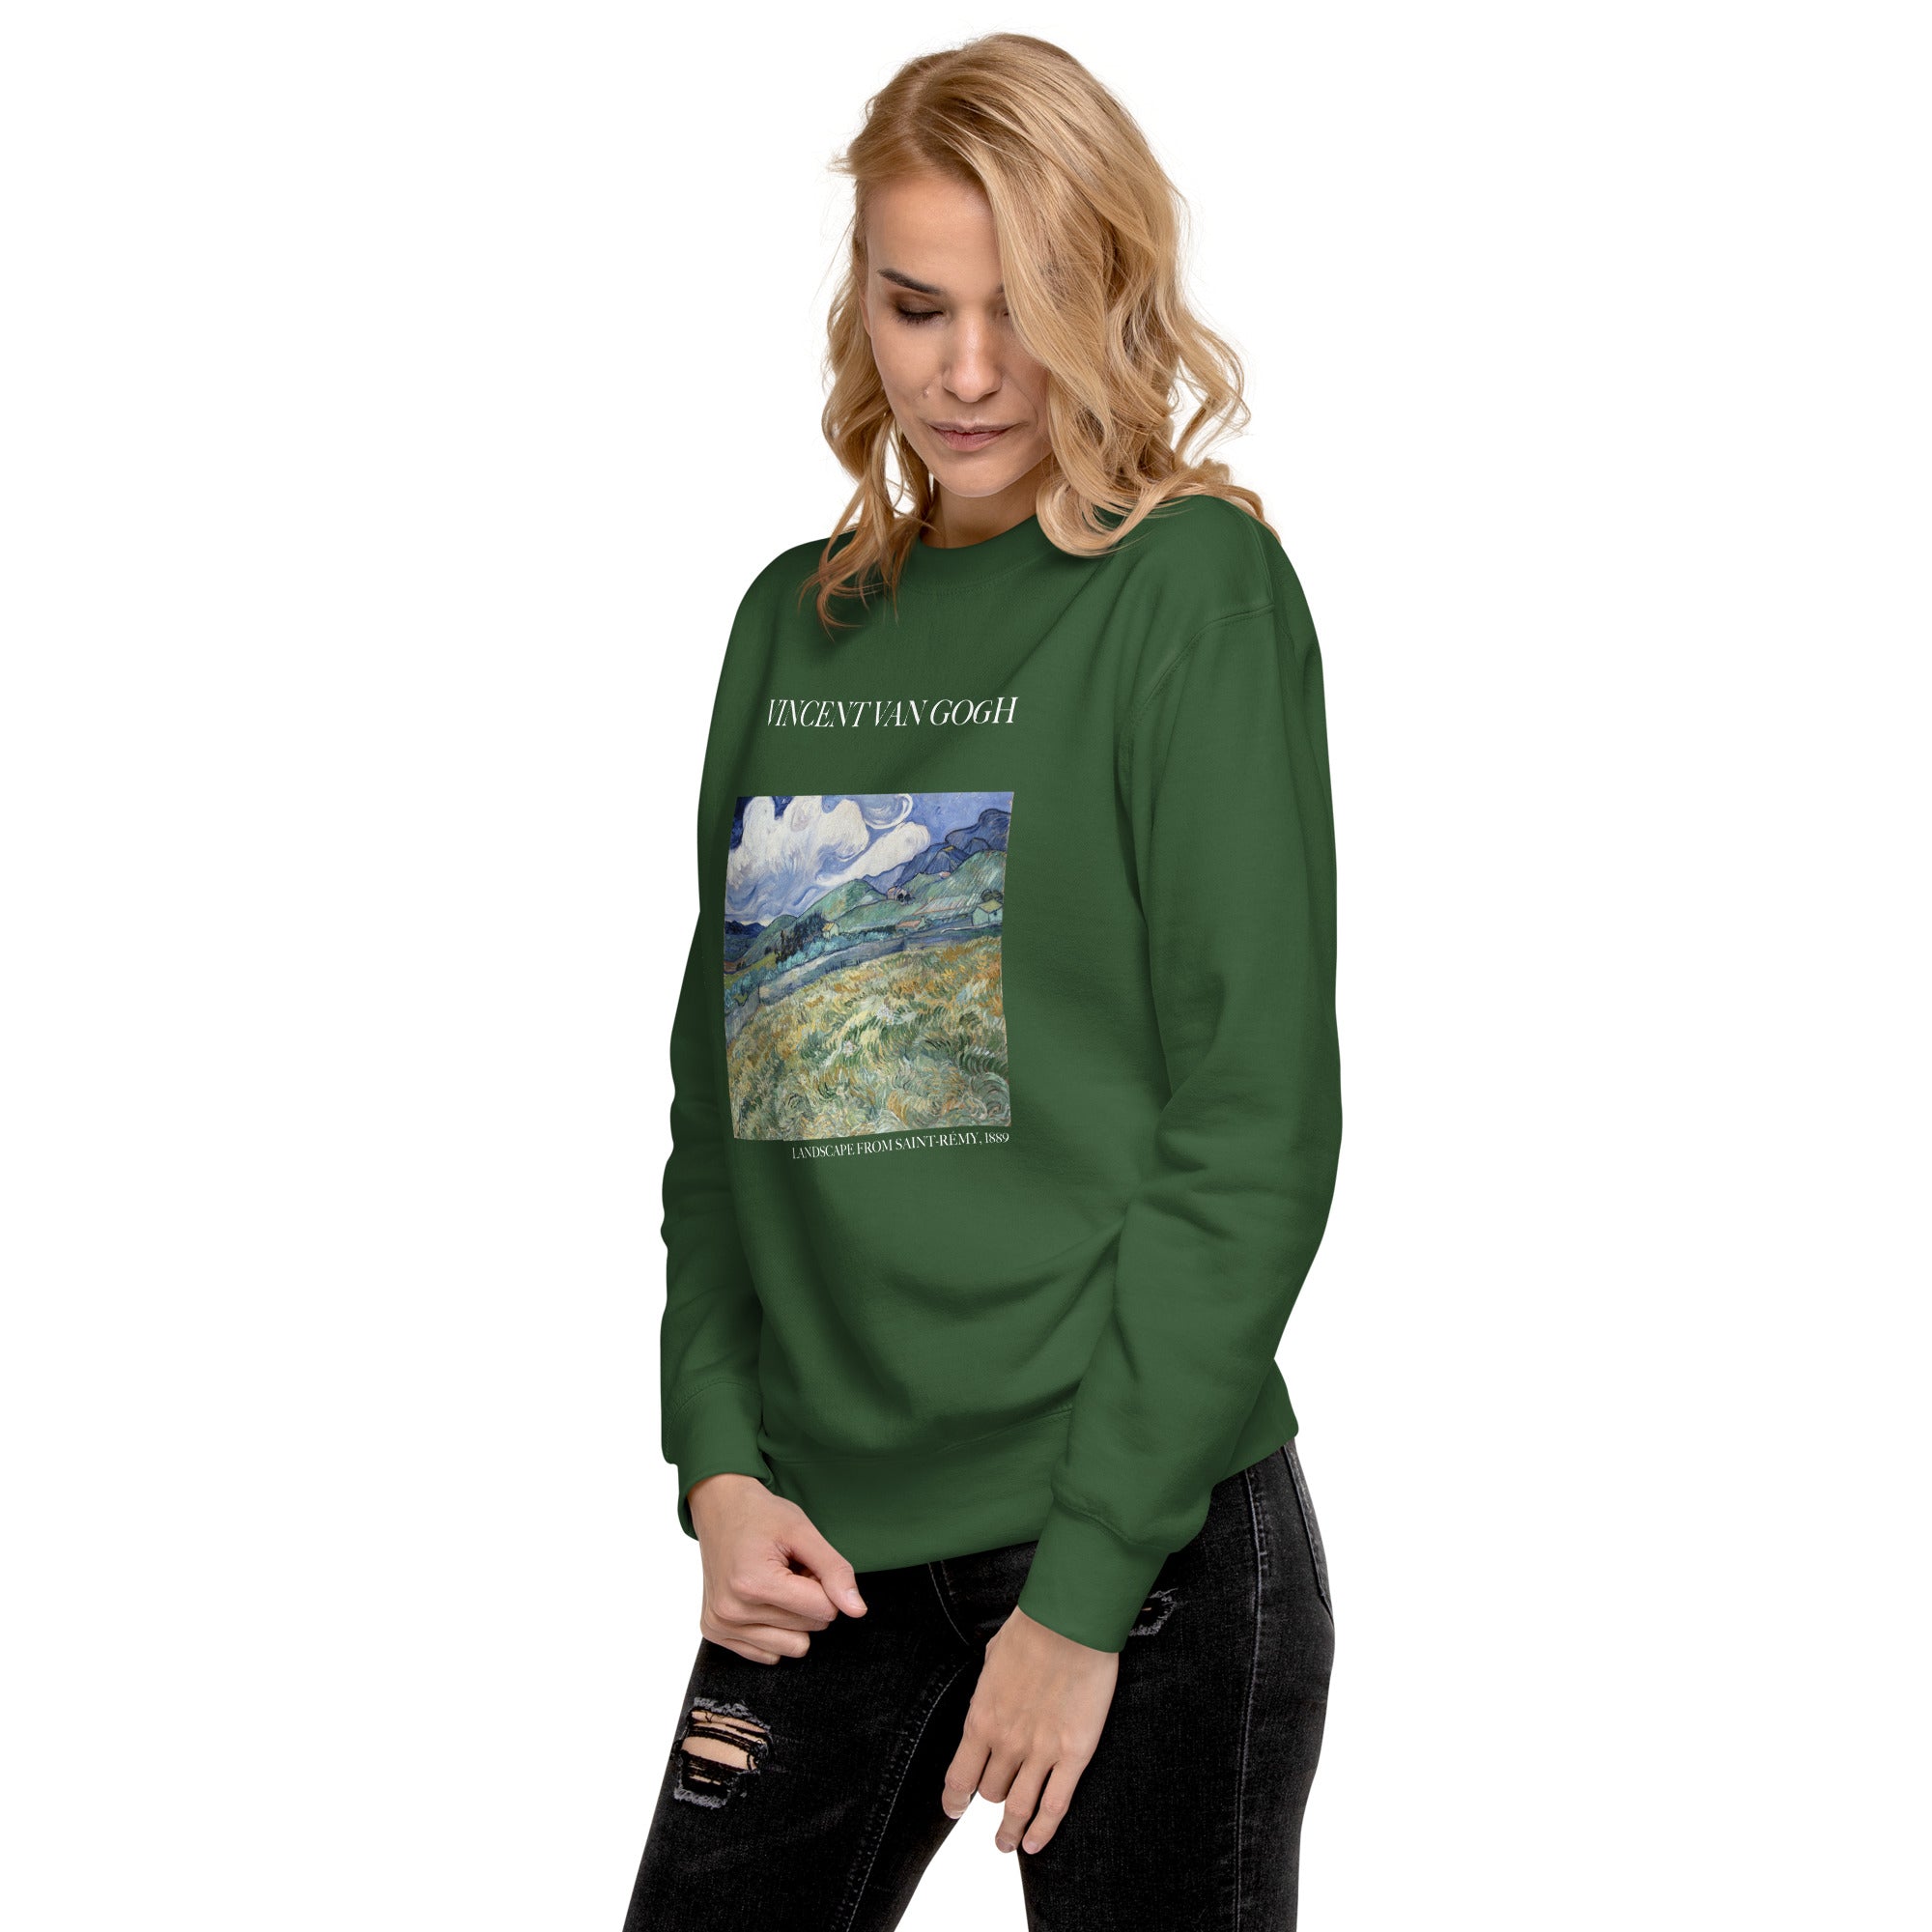 Vincent van Gogh 'Landscape from Saint-Rémy' Famous Painting Sweatshirt | Unisex Premium Sweatshirt